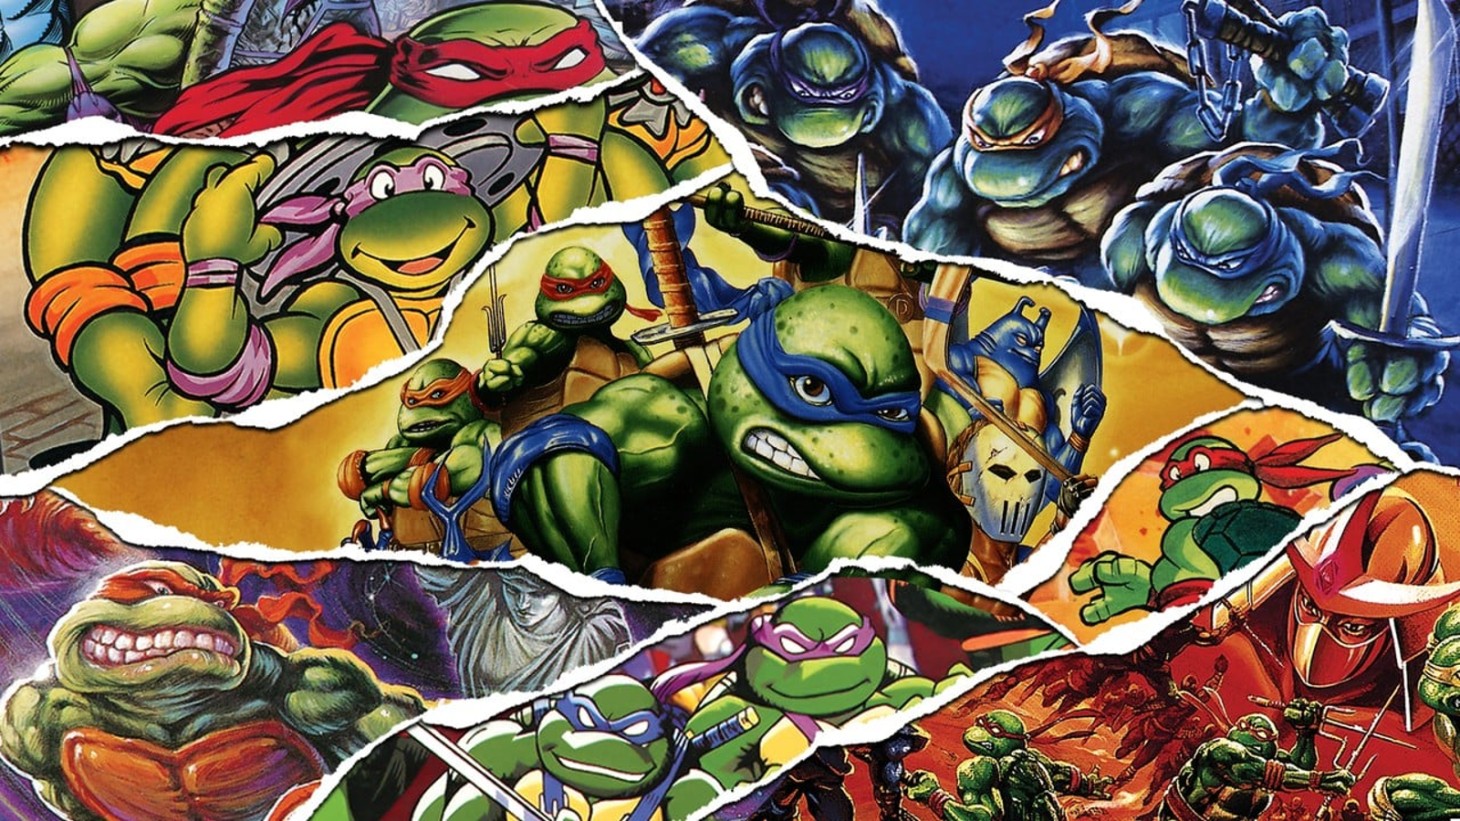 teenage mutant ninja turtles the cowabunga collection digital eclipse konami tmnt delisting steam pc